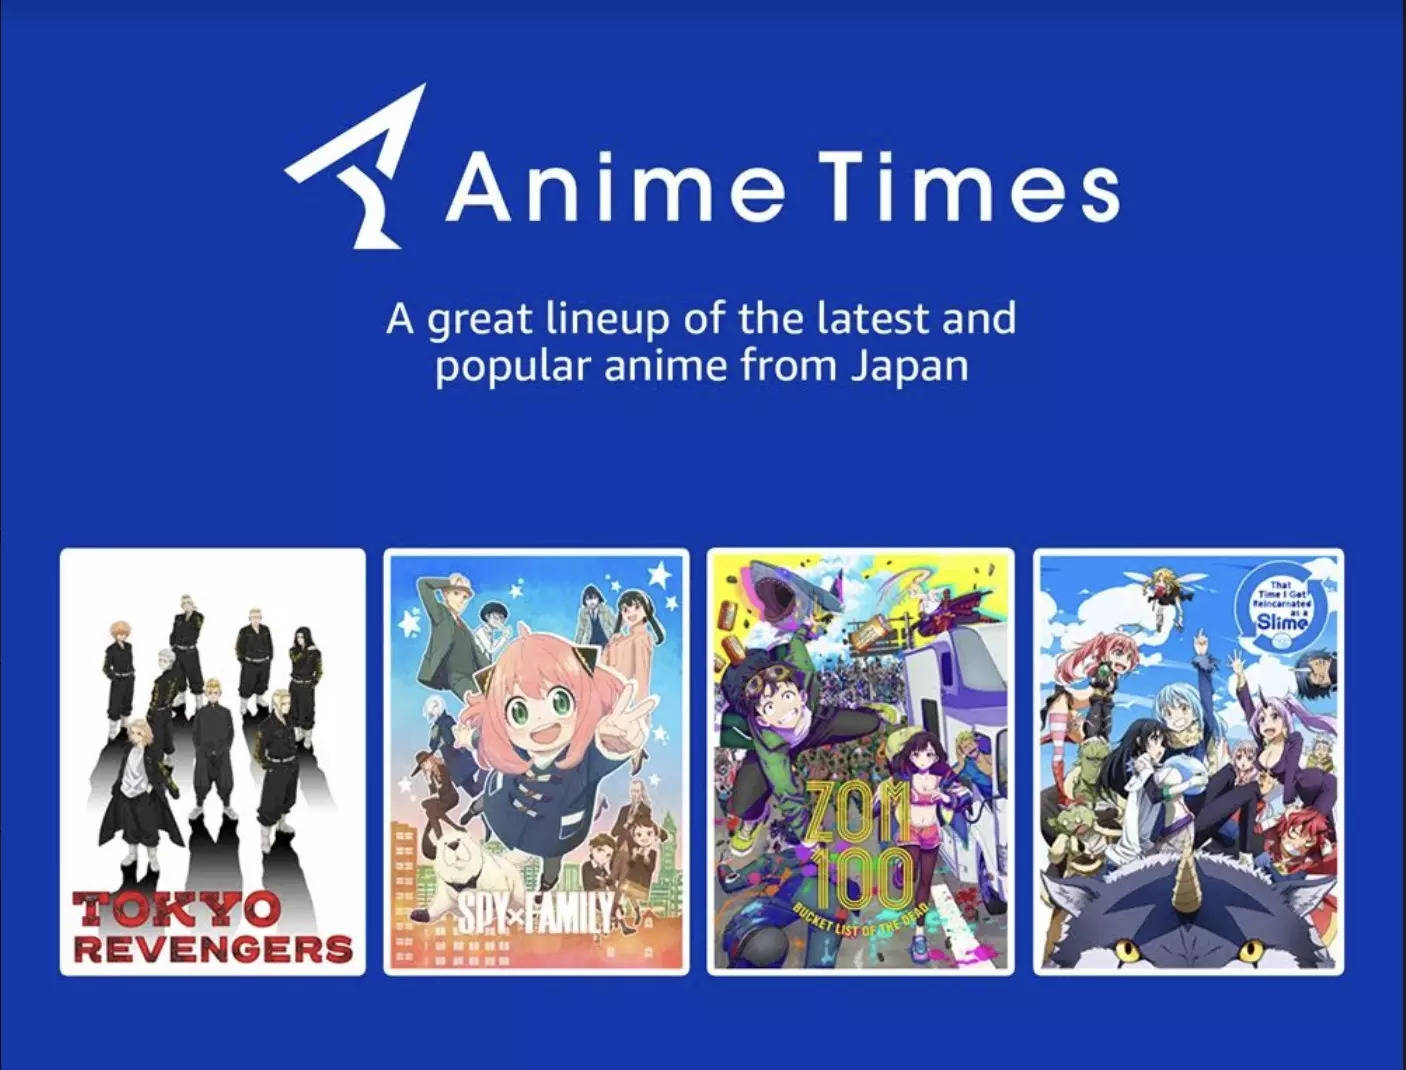 Como as pessoas pensam que os animes são: realmente os an imes são